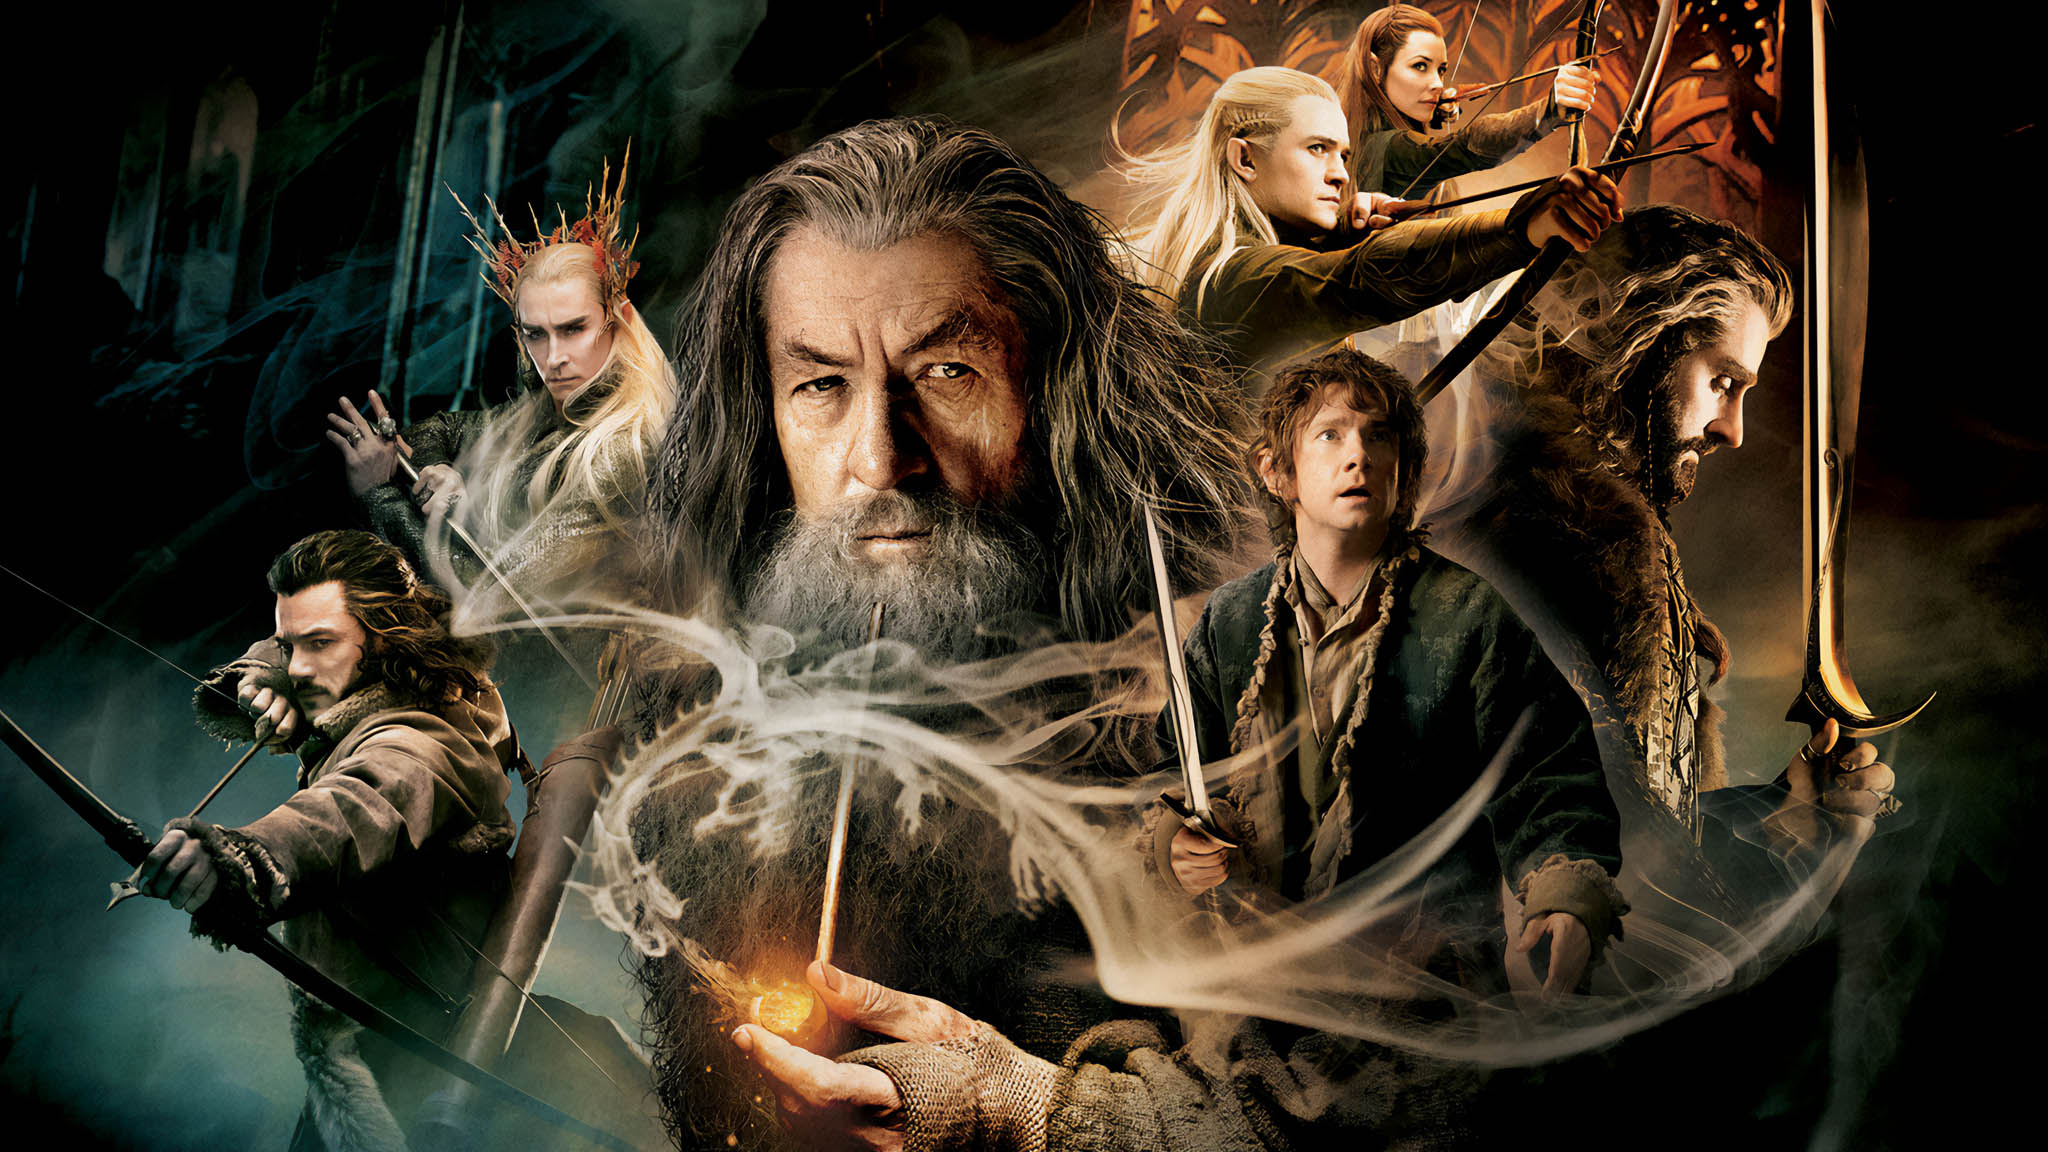 فيلم The Hobbit: The Desolation of Smaug 2013 مترجم